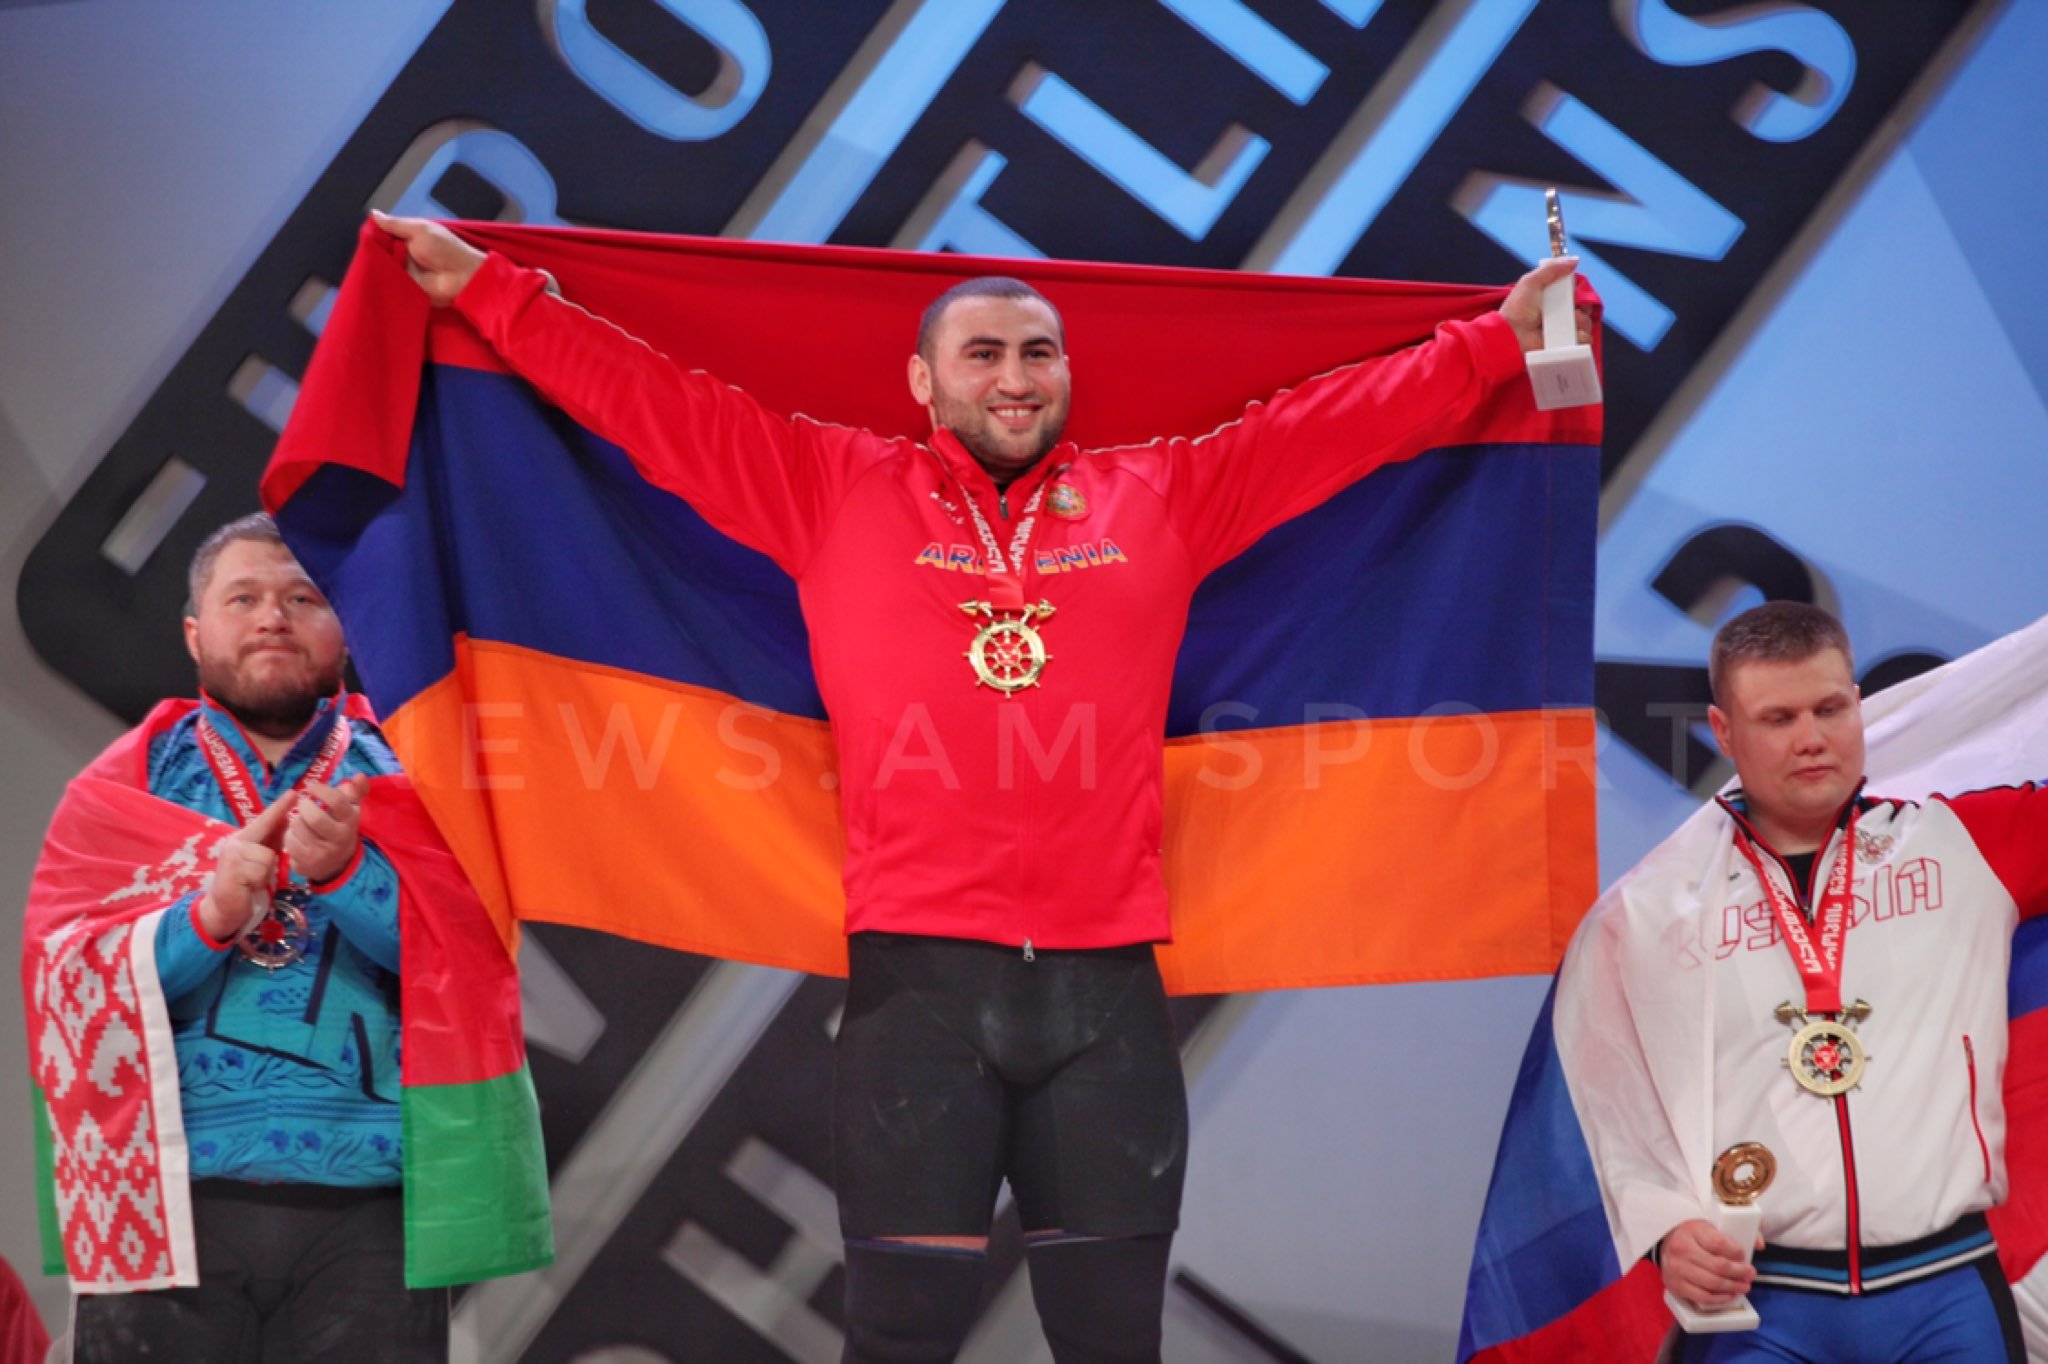 Սիմոն Մարտիրոսյանը՝ Եվրոպայի առաջնության կրկնակի չեմպիոն․ Սա միայն իմ հաղթանակը չէ, ամբողջ հայ ազգի հաղթանակն է